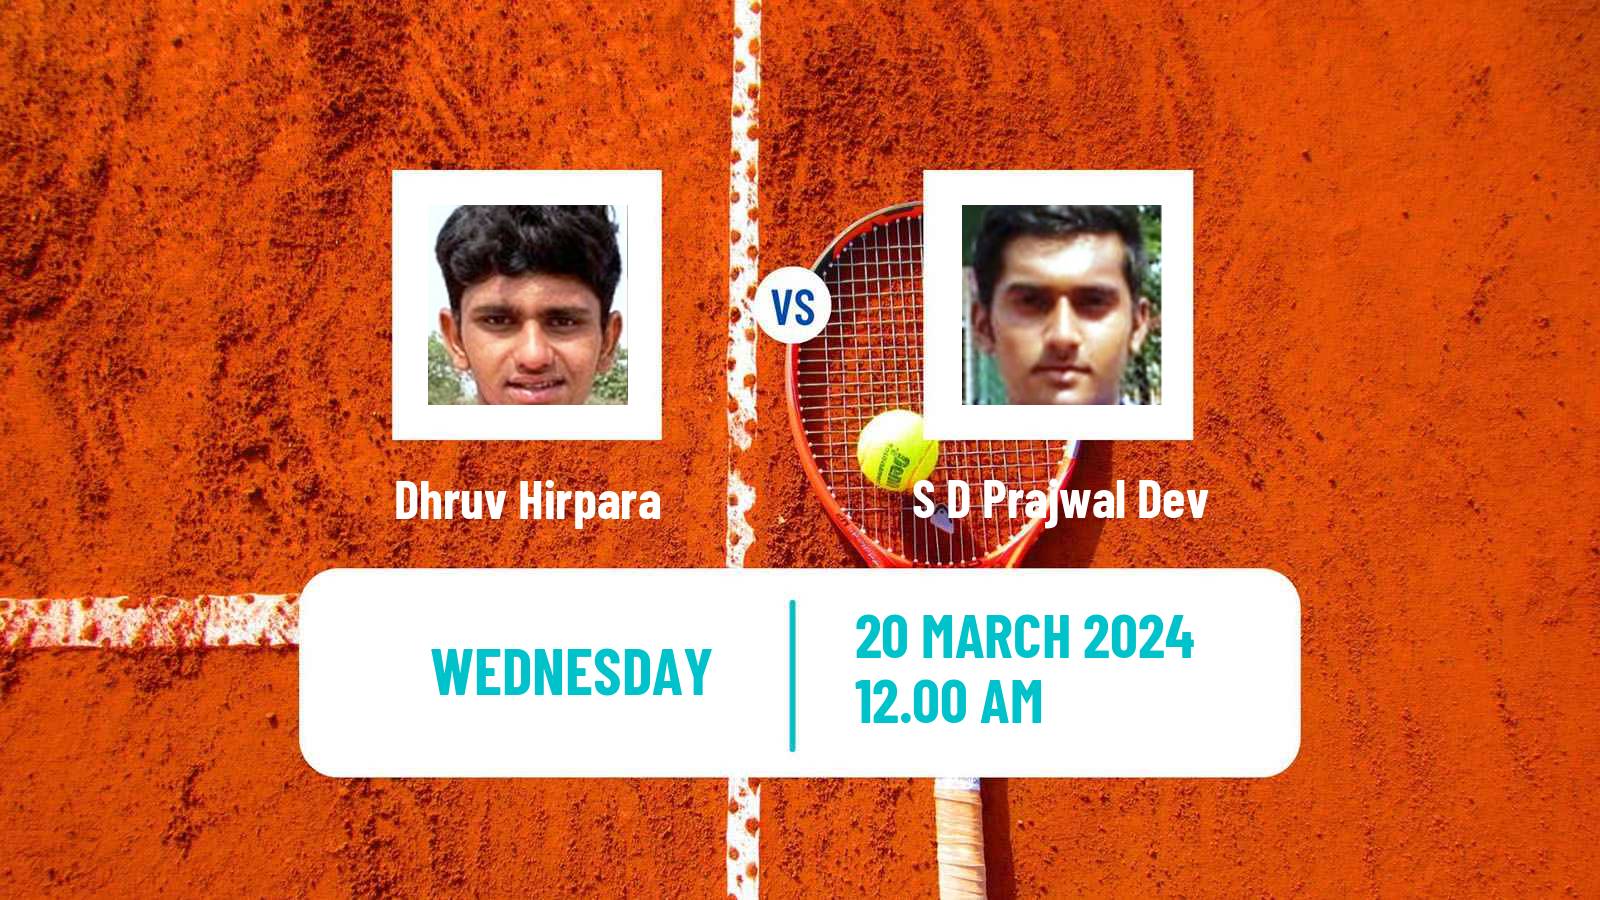 Tennis ITF M15 Chandigarh Men Dhruv Hirpara - S D Prajwal Dev